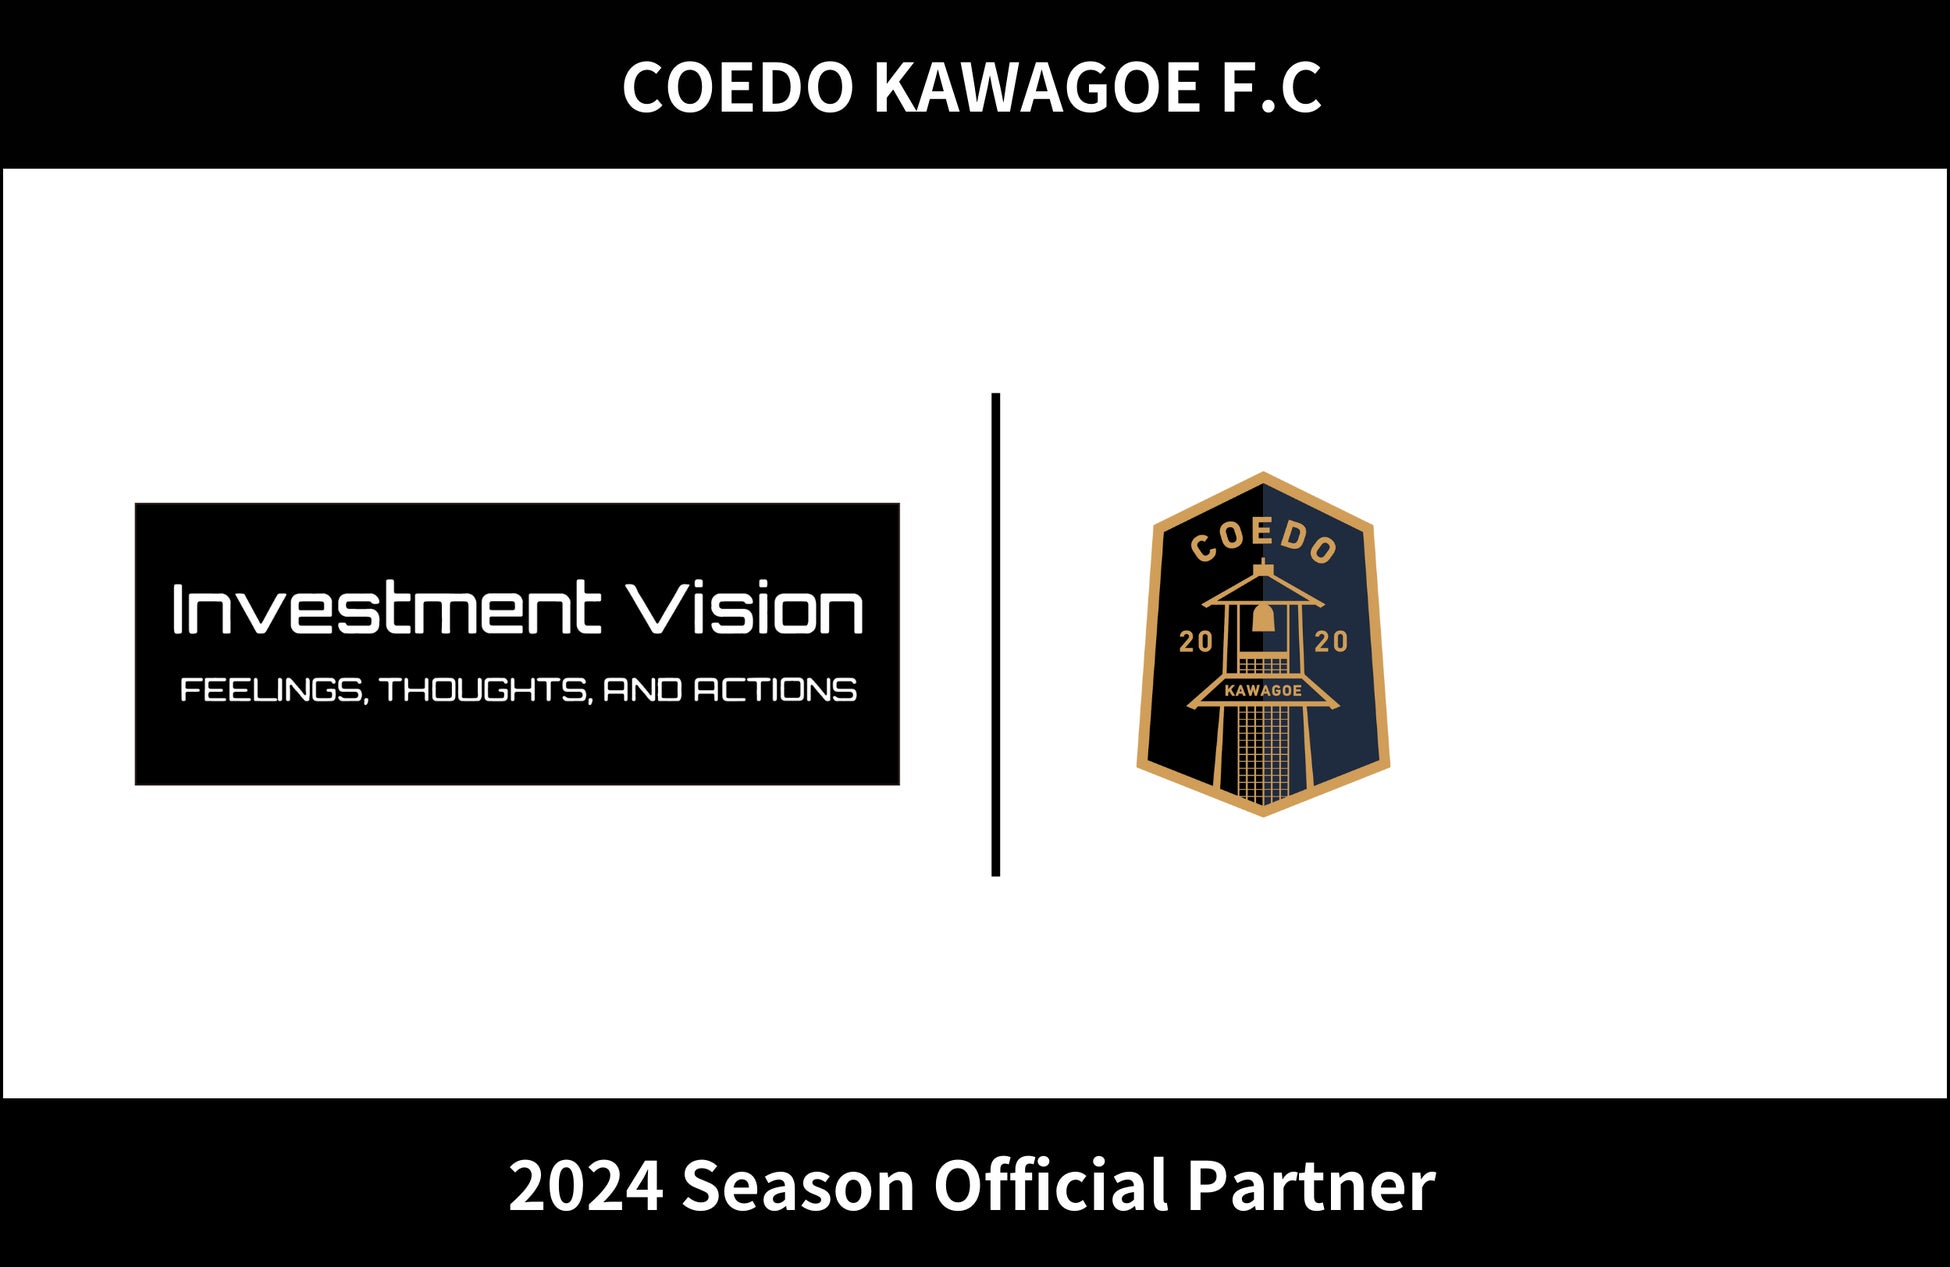 埼玉県川越市からJリーグを目指す「COEDO KAWAGOE F.C」、インベストメント・ビジョン合同会社と2024シーズンのオフィシャルパートナー契約を締結